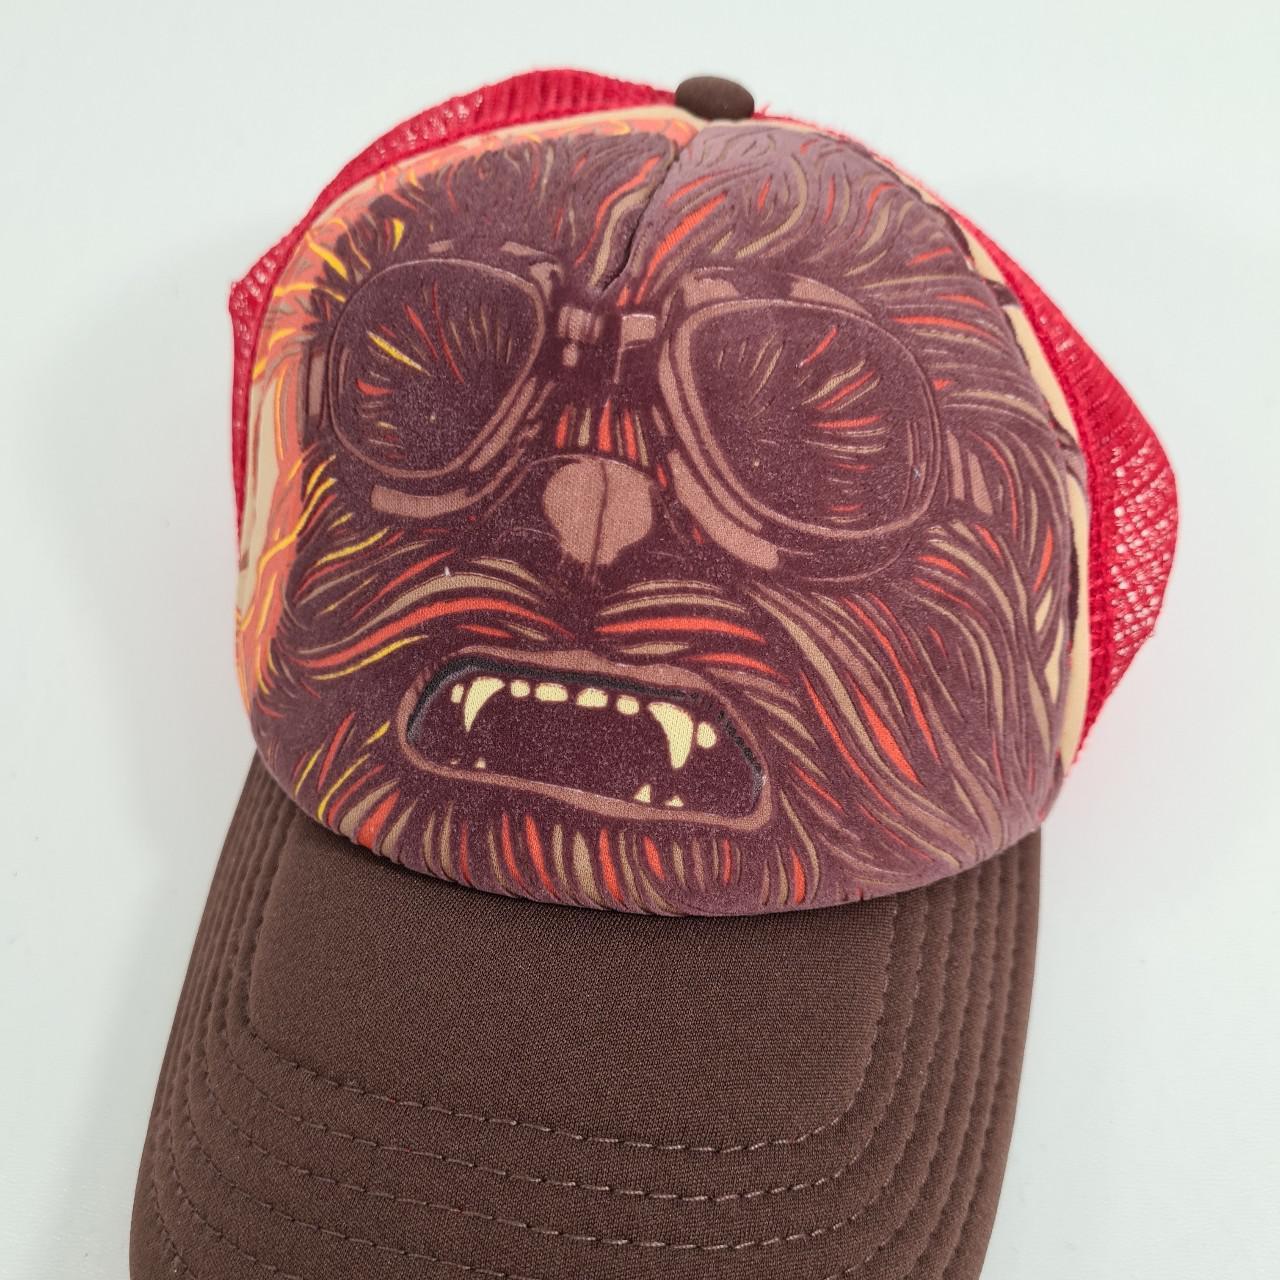 Product Image 3 - Star Wars Chewbacca Mesh Truker